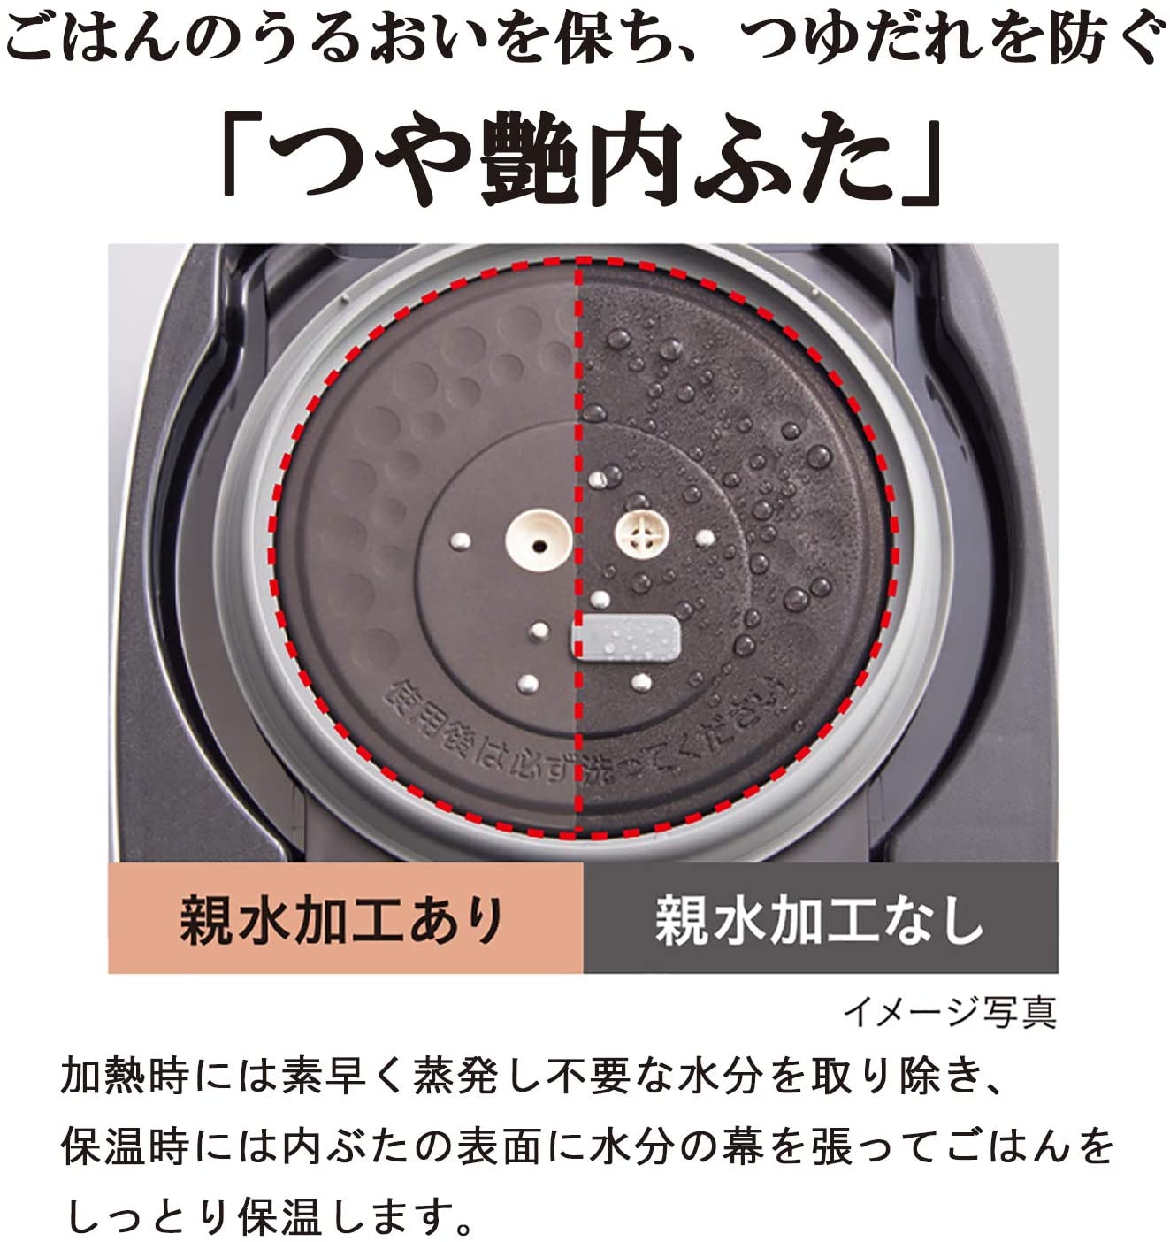 タイガー魔法瓶(TIGER) 圧力IHジャー炊飯器 JPC-G100-WAの商品画像サムネ5 